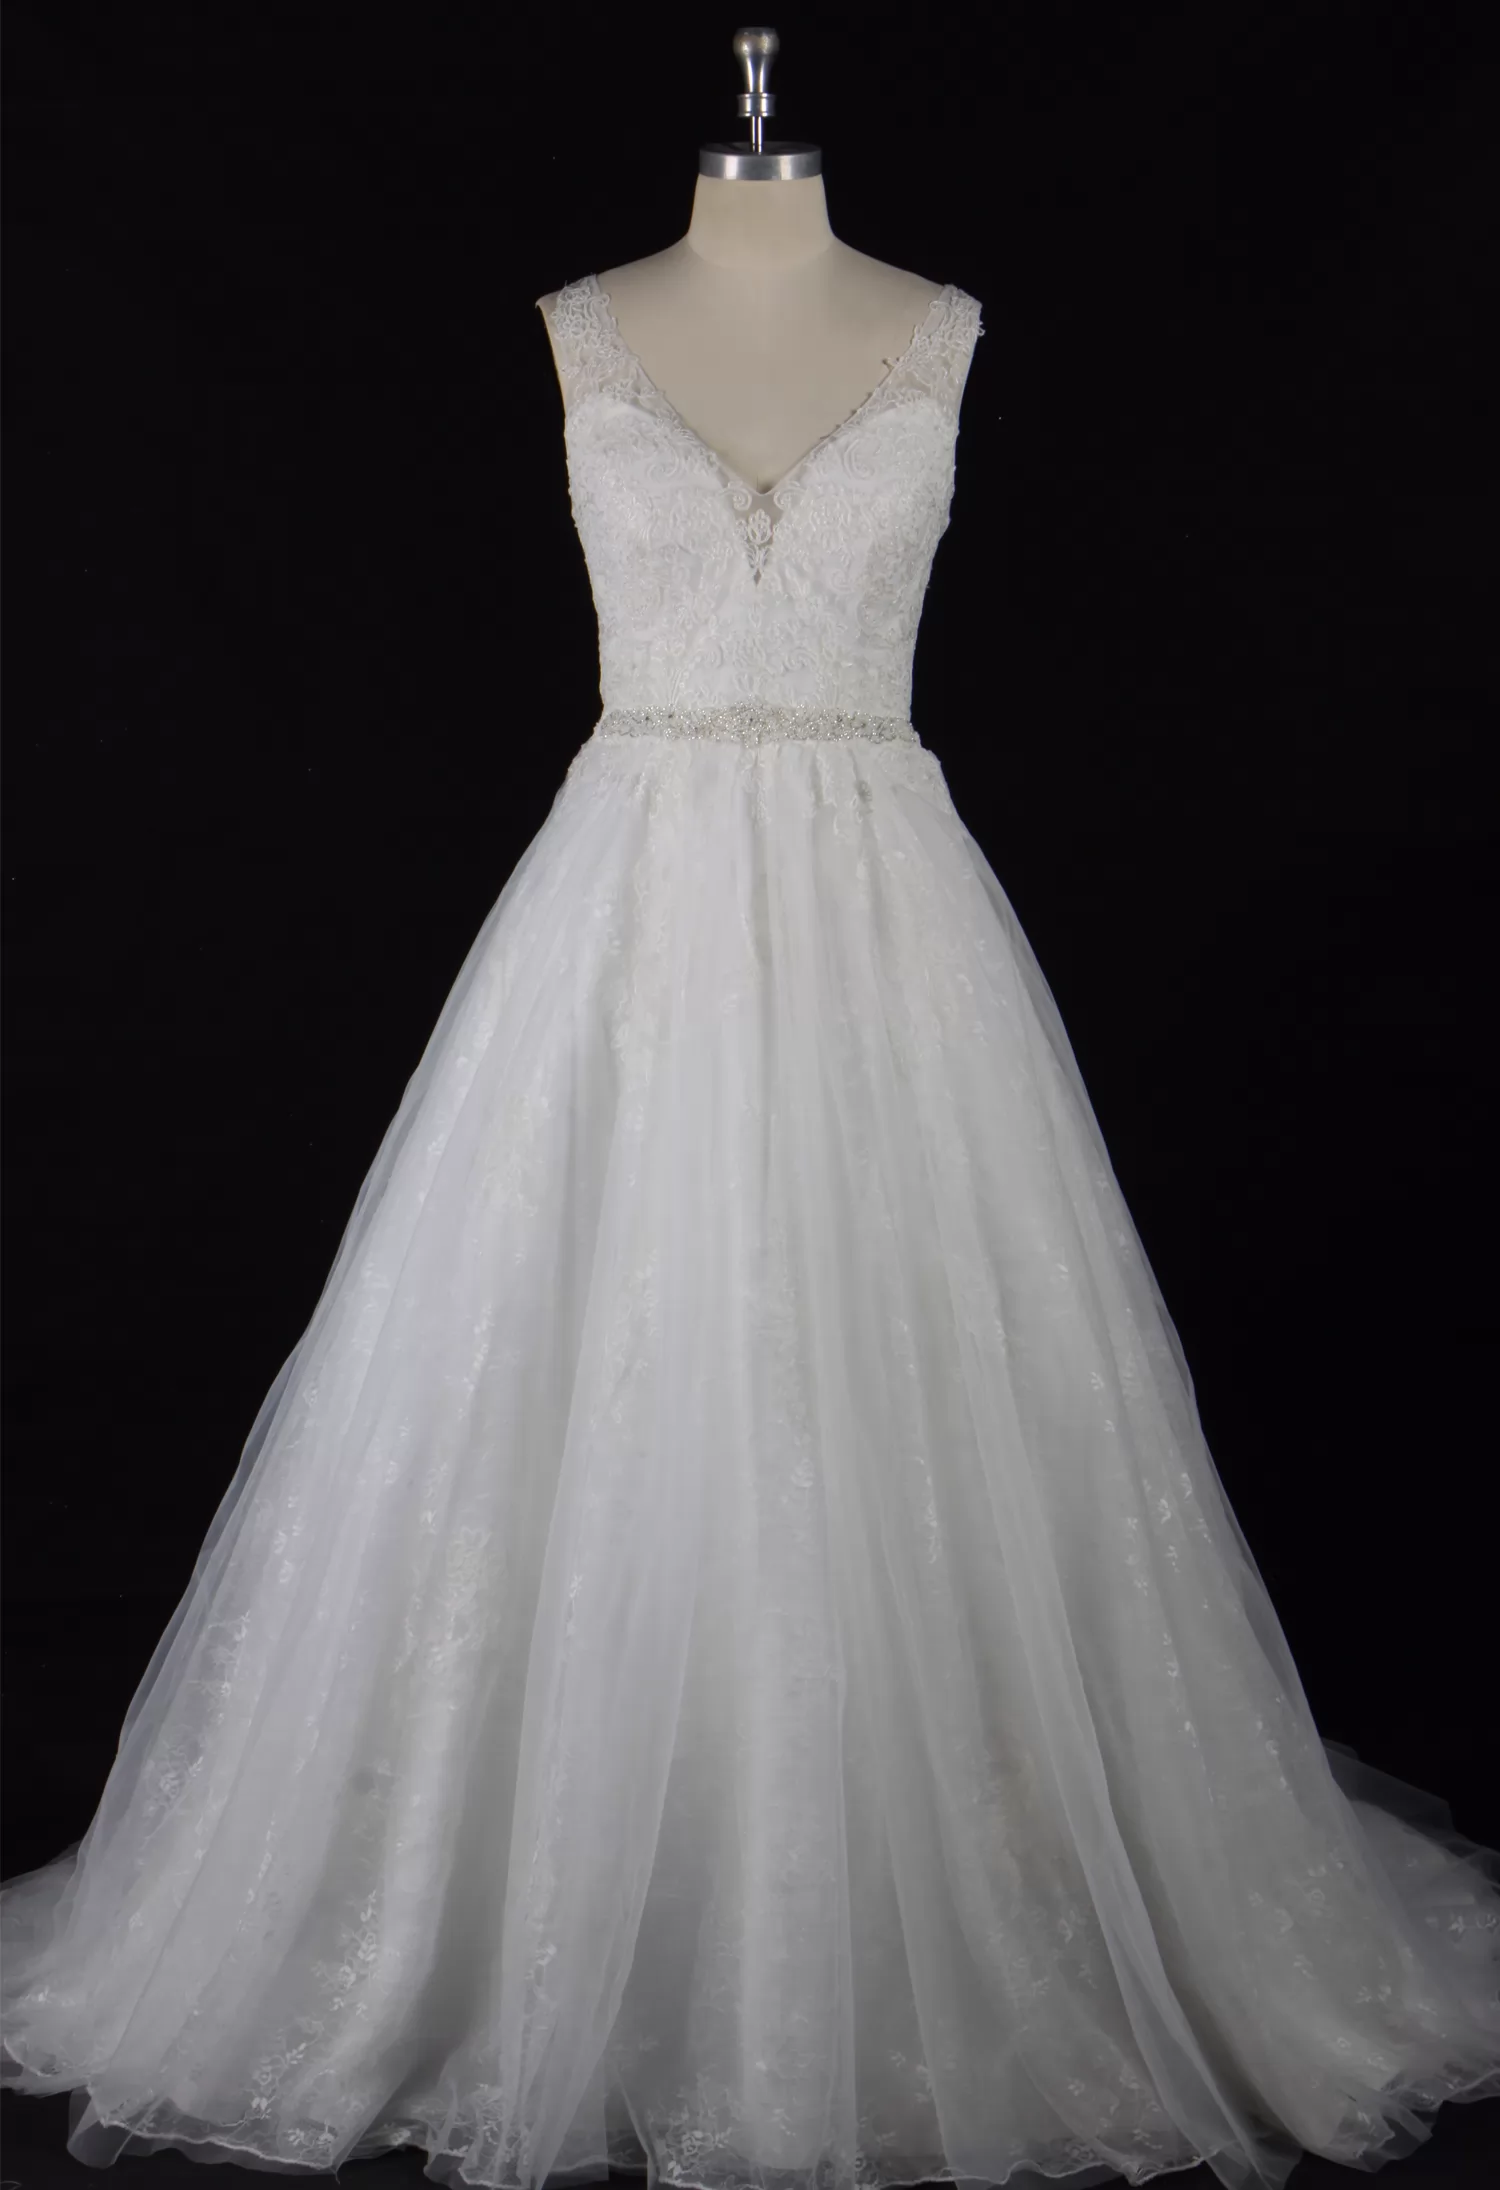 Illusion V Neckline Lace Wedding Dress With Beading Belt